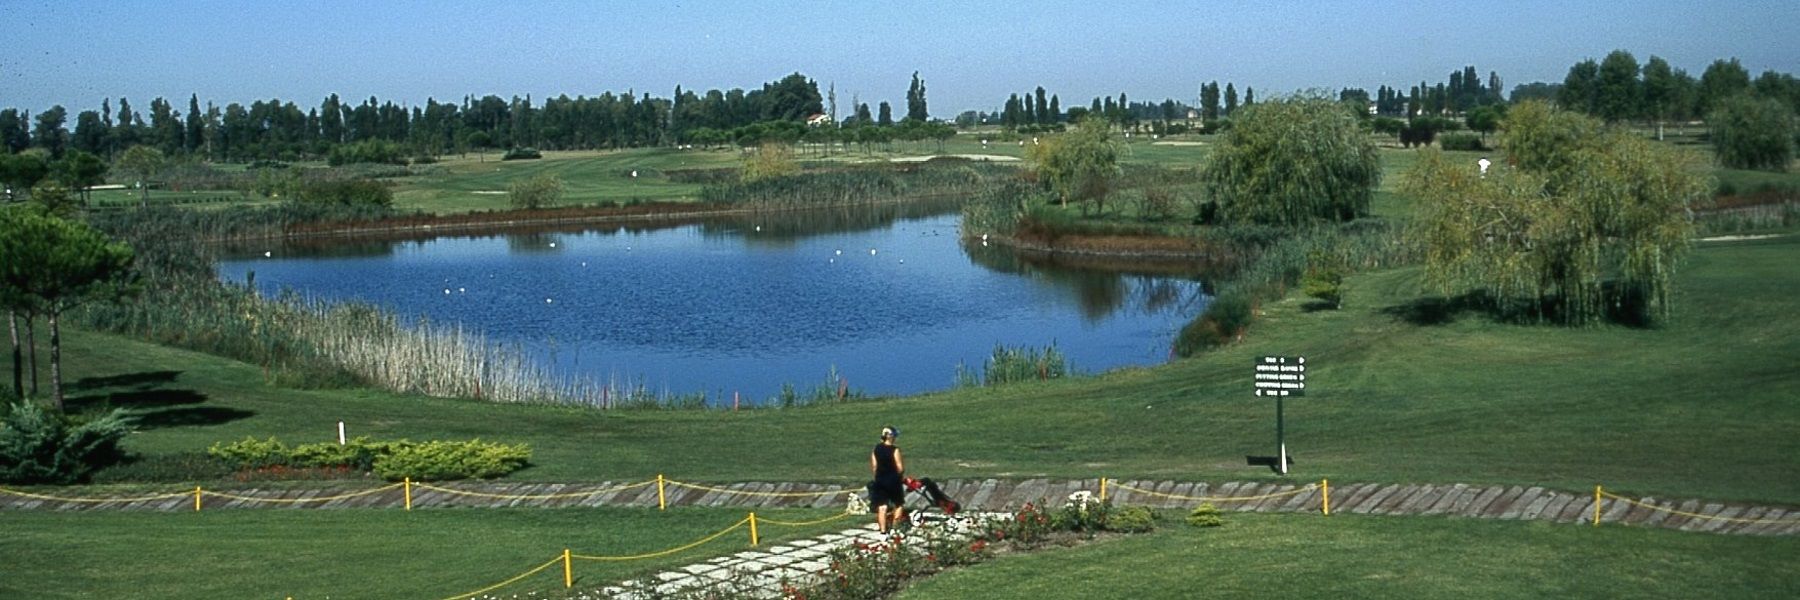 Adriatic Golf Club Cervia - August Calendar